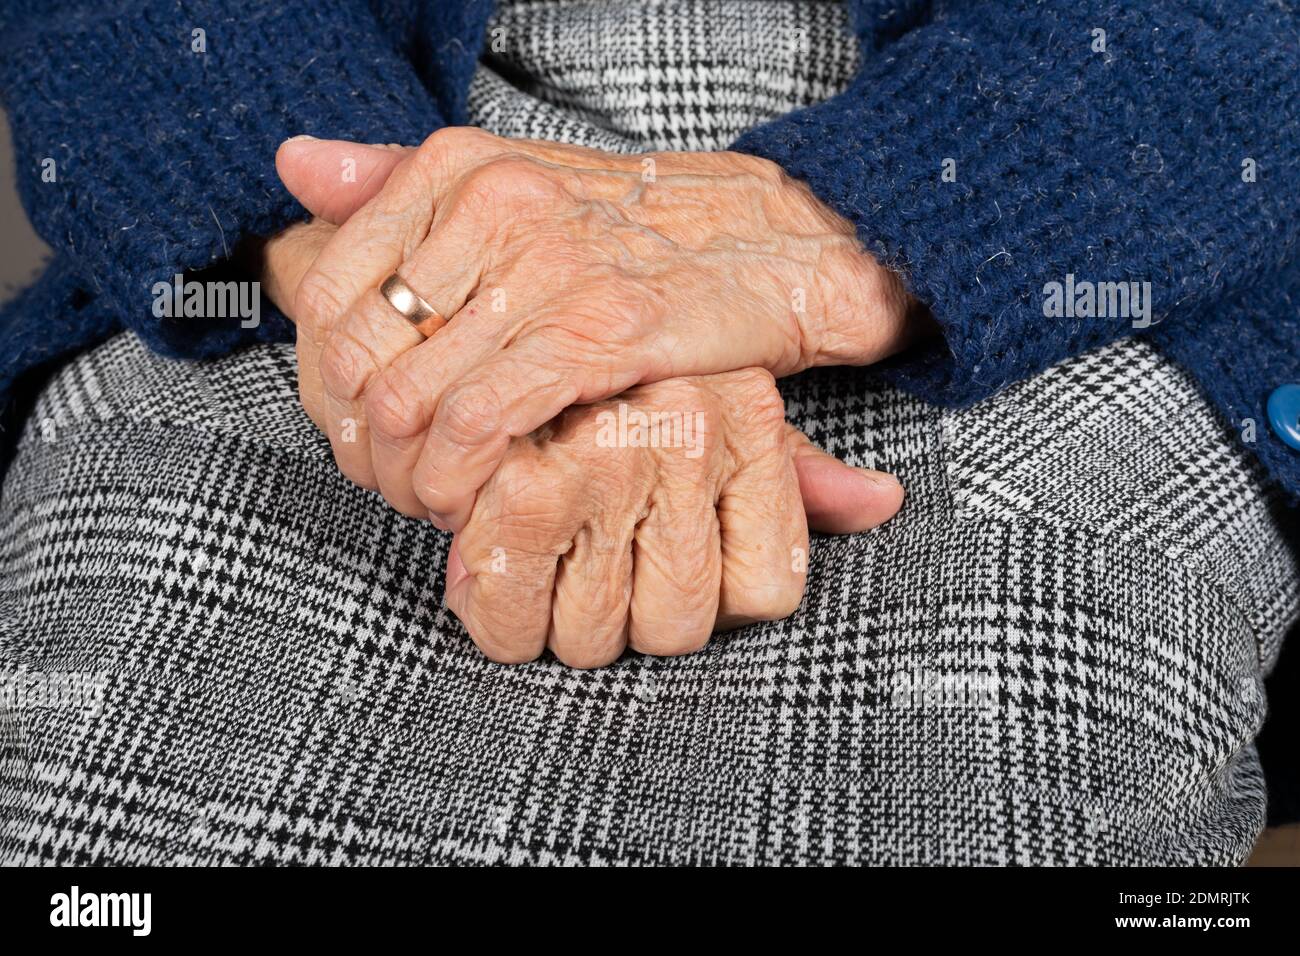 Primo piano immagine di vecchia donna tremante grinze mani Foto Stock